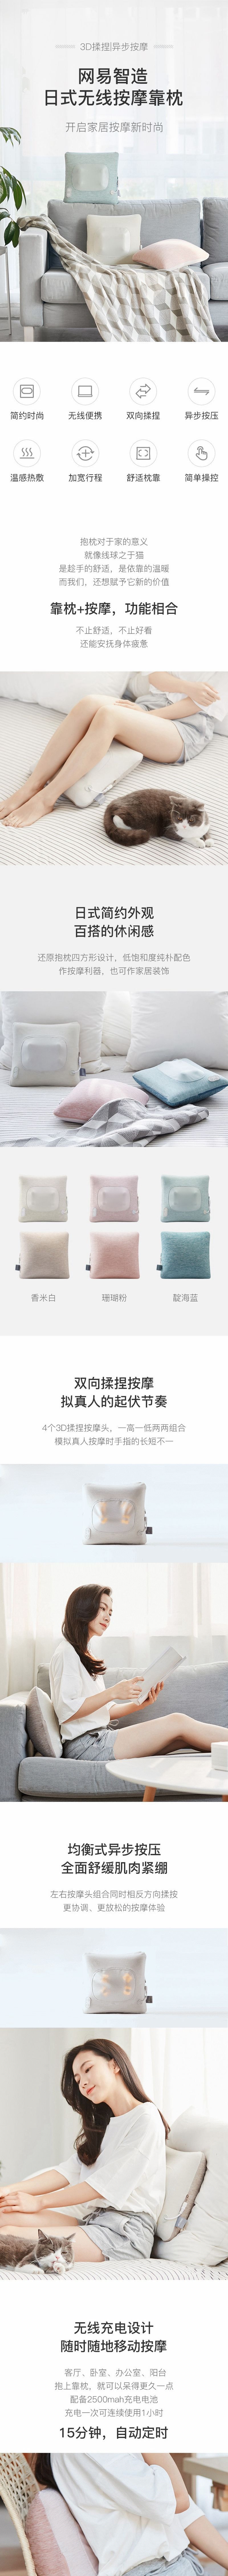 Japanese-style Wireless Massage Pillow White [5-7 Days U.S. Free Shipping]